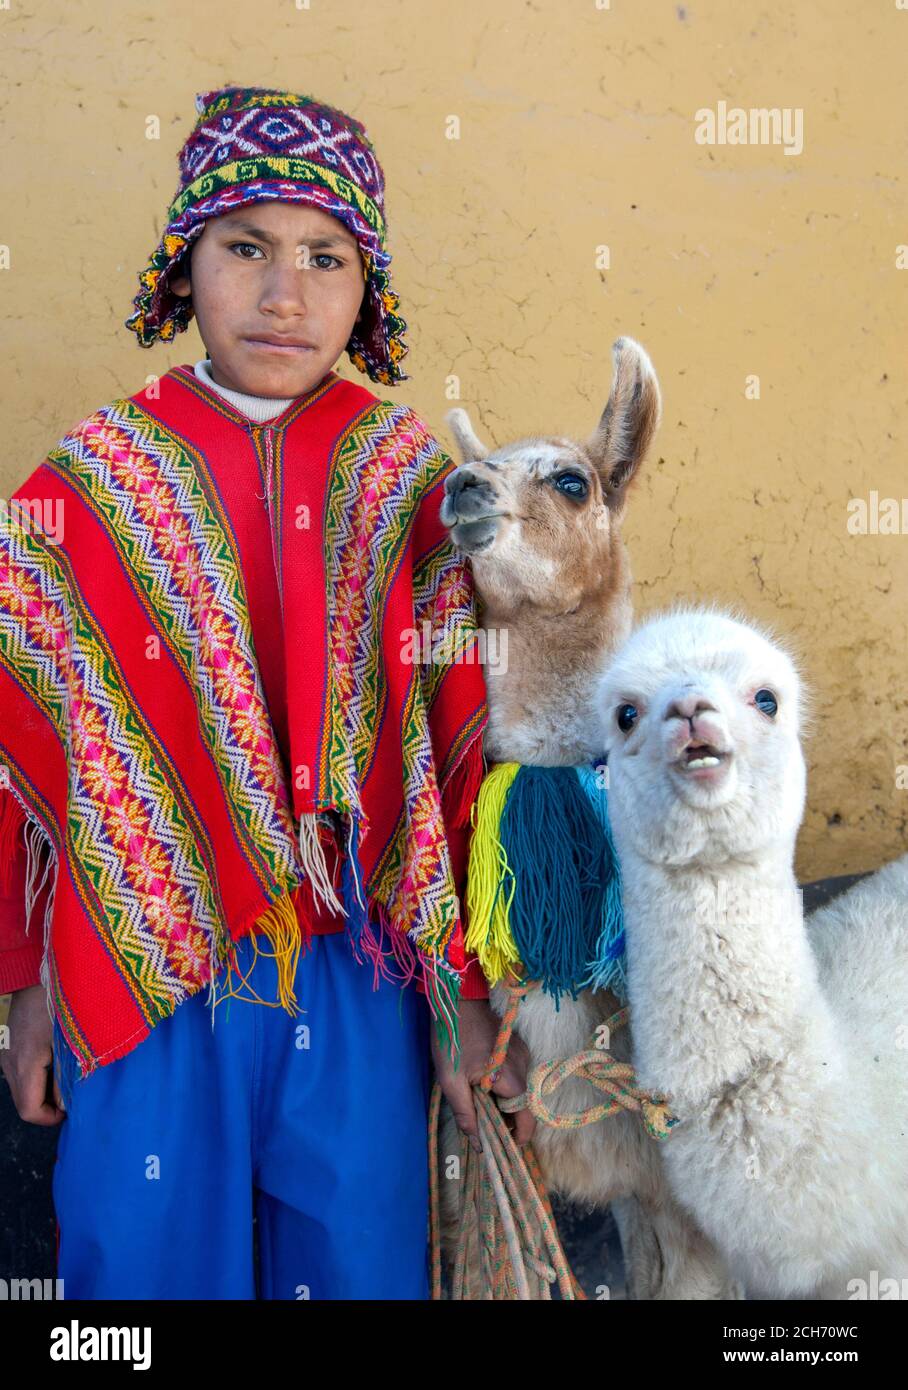 Un garçon vêtu d'un poncho péruvien traditionnel coloré et portant un  chullo sur sa tête se tient avec deux lamas sur le bord de la route à Cusco  au Pérou Photo Stock -